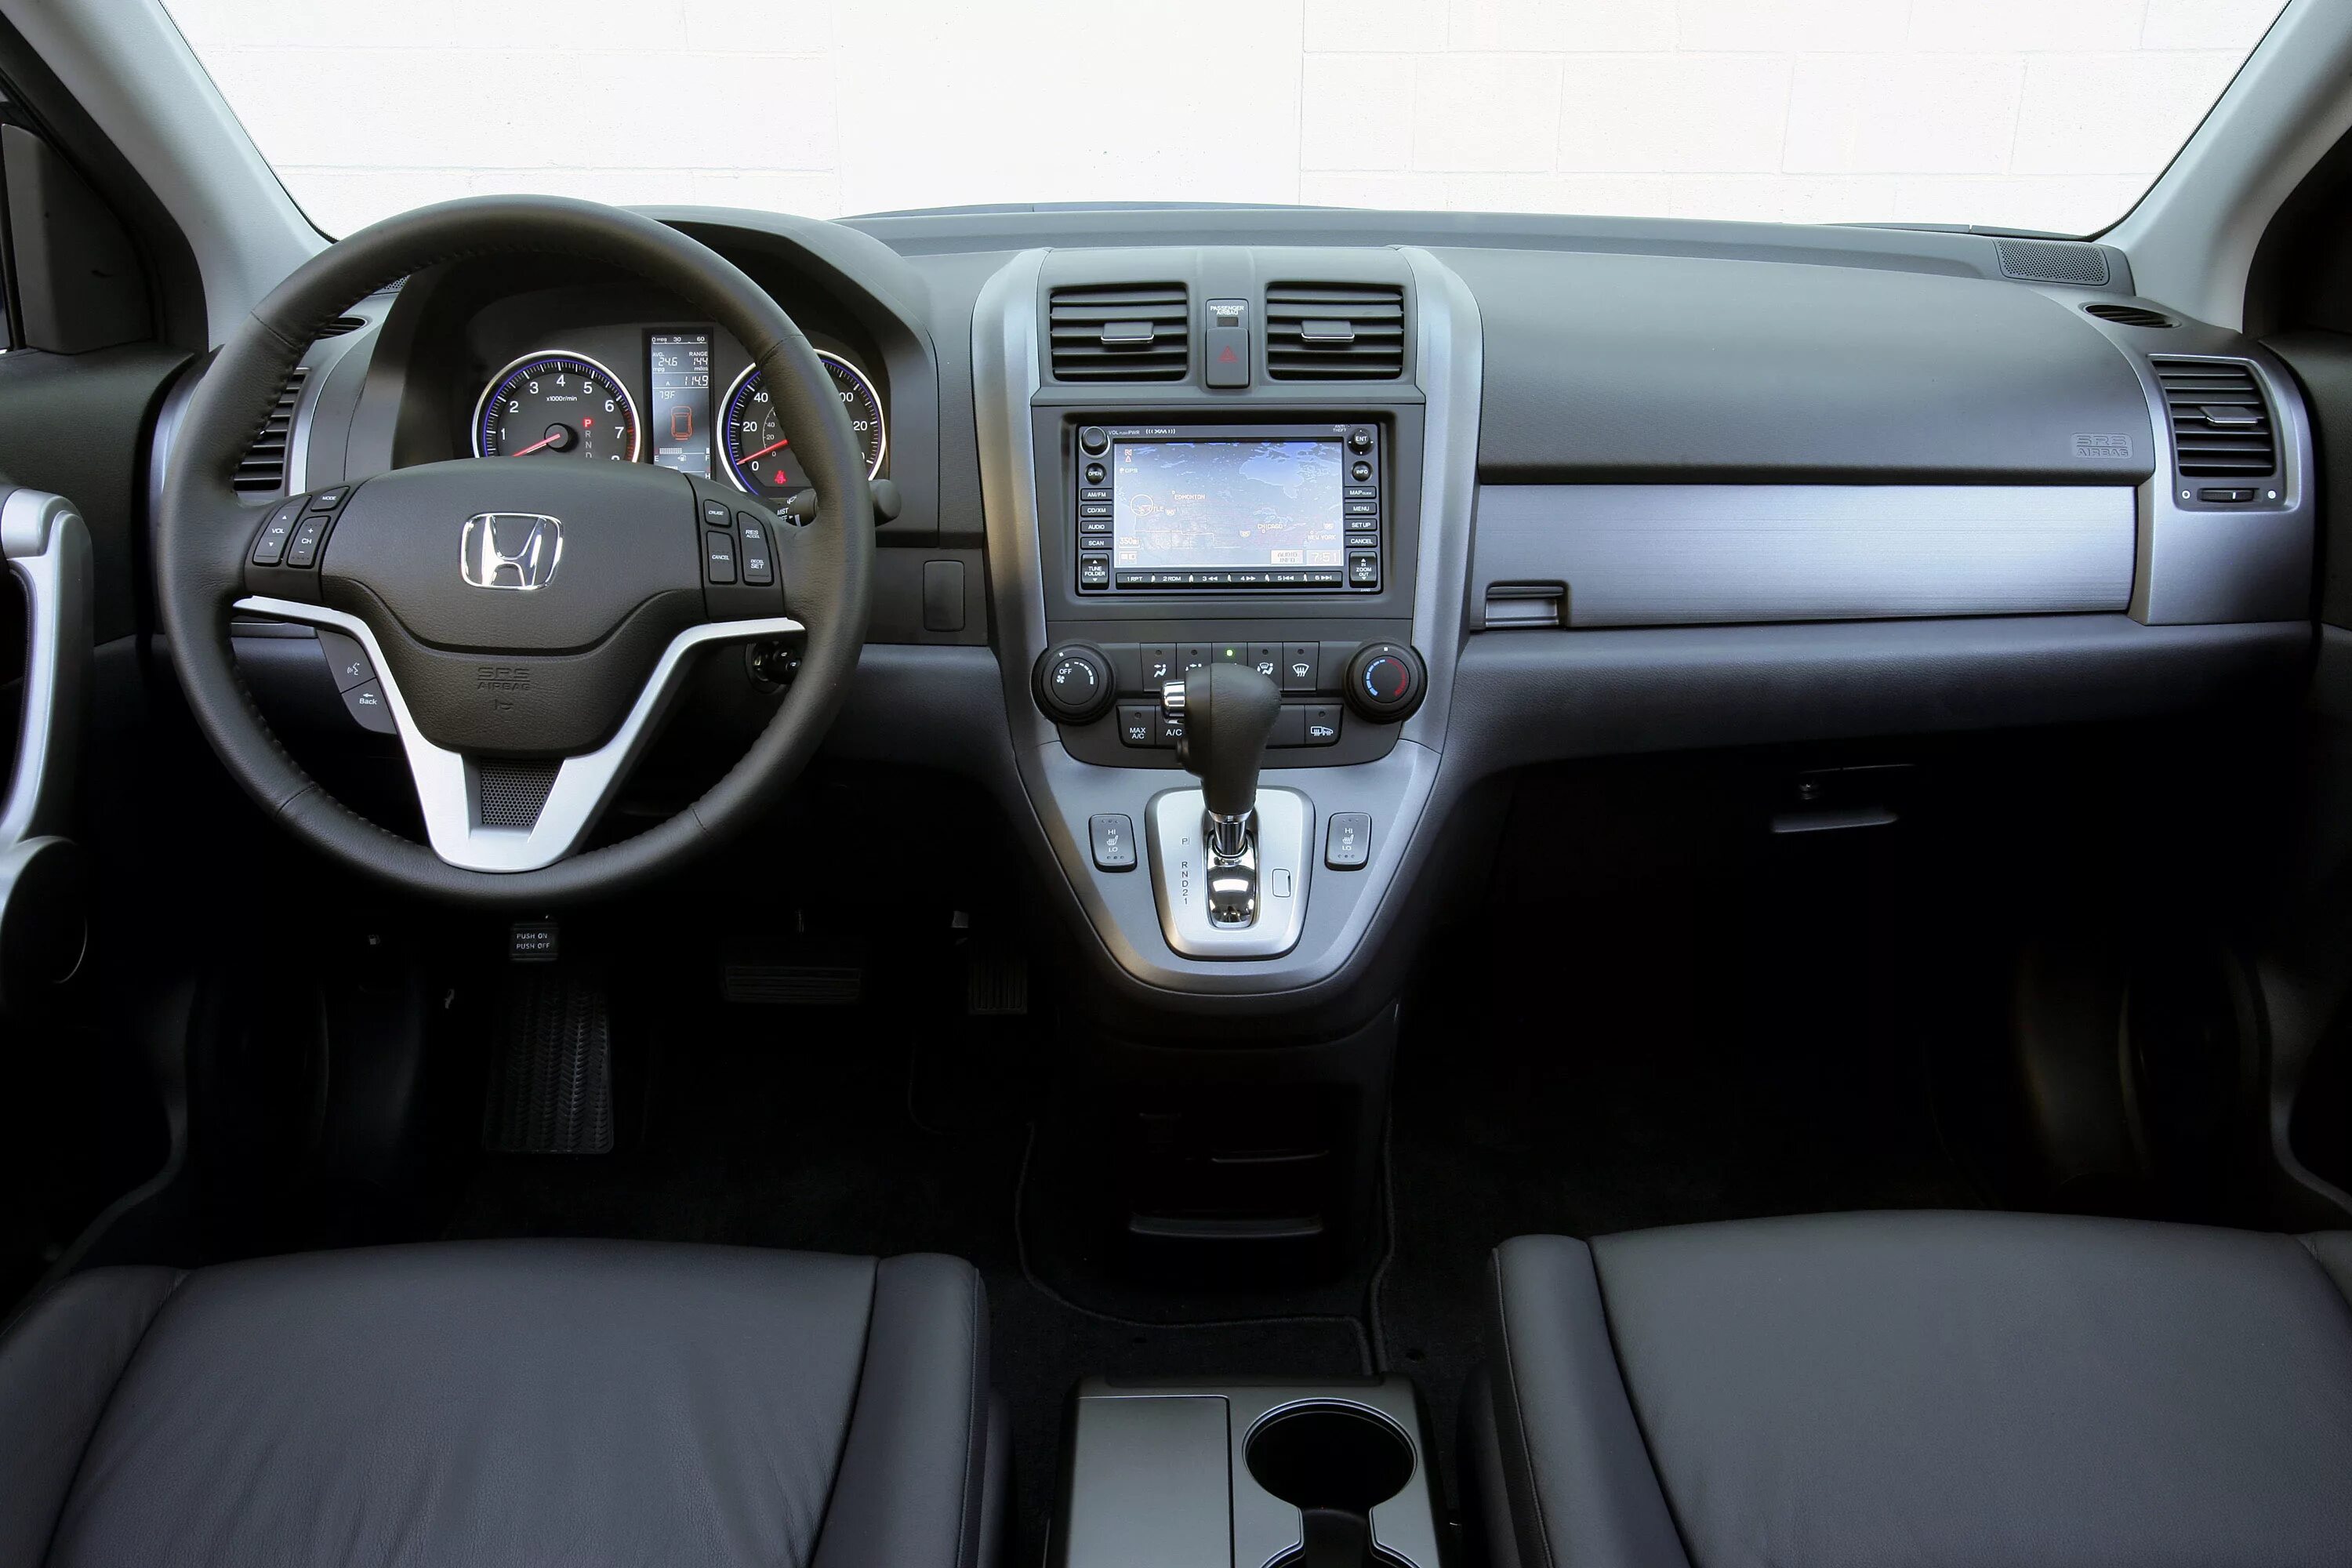 Хонда CRV 2007 салон. Honda CR-V 2.4 2007 салон. Honda CR-V 2007 Interior. Хонда СРВ 2007. Купить хонду срв автомат